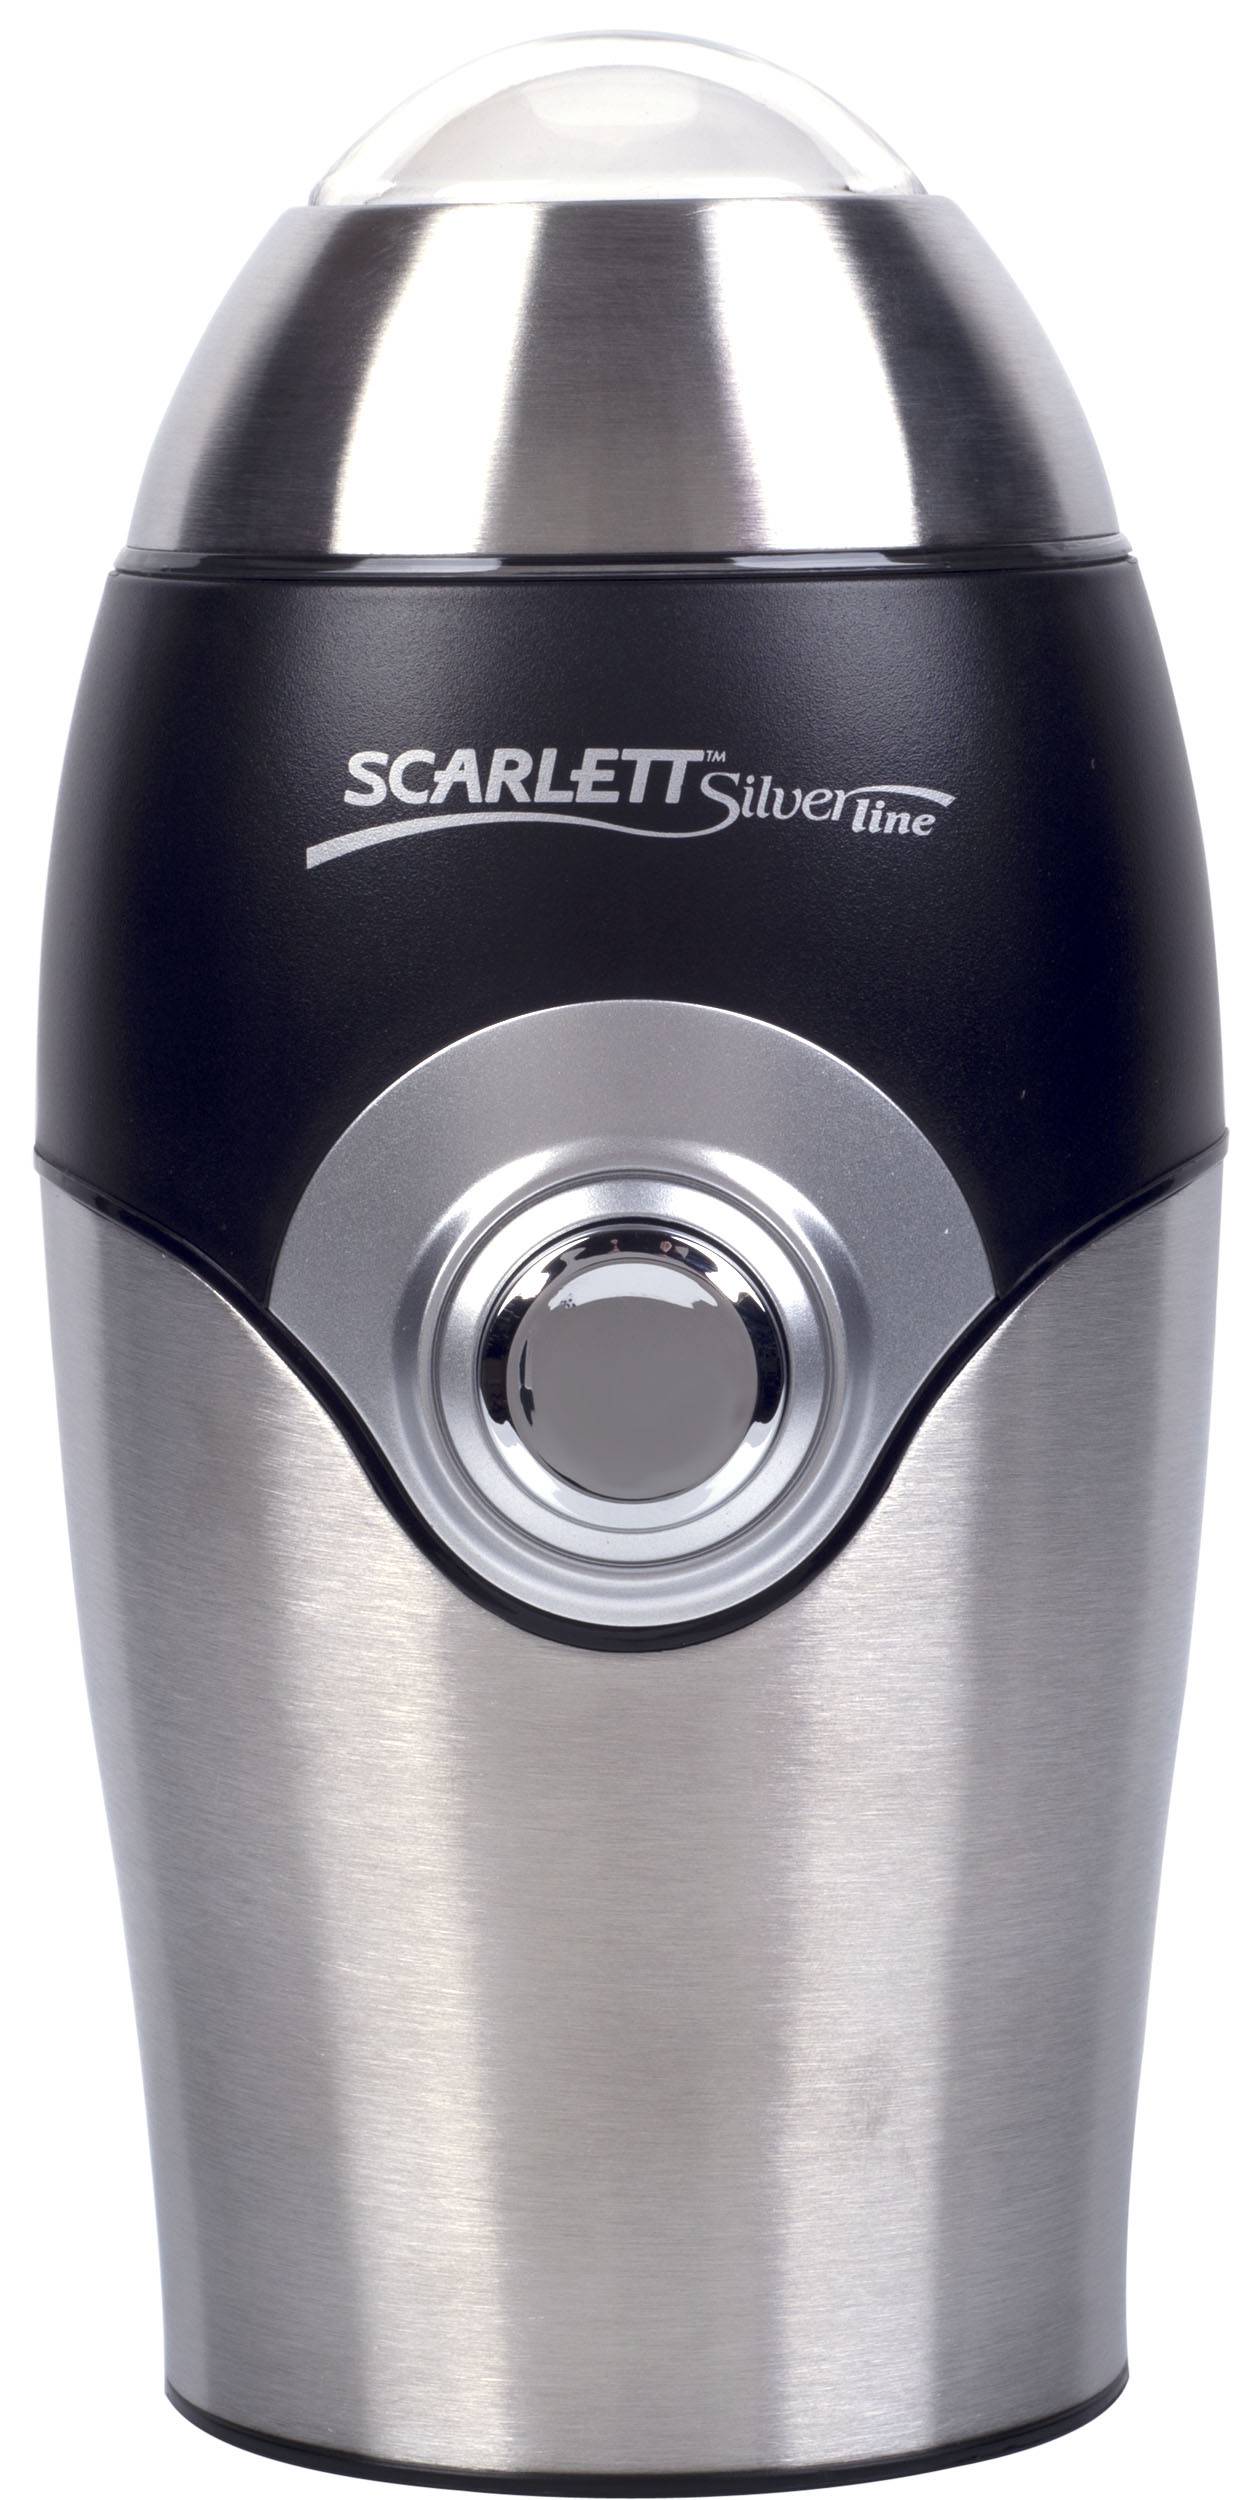 Кофемолка scarlett sc-cg44506 в г.  одинцово, купить по акционной цене , отзывы и обзоры.